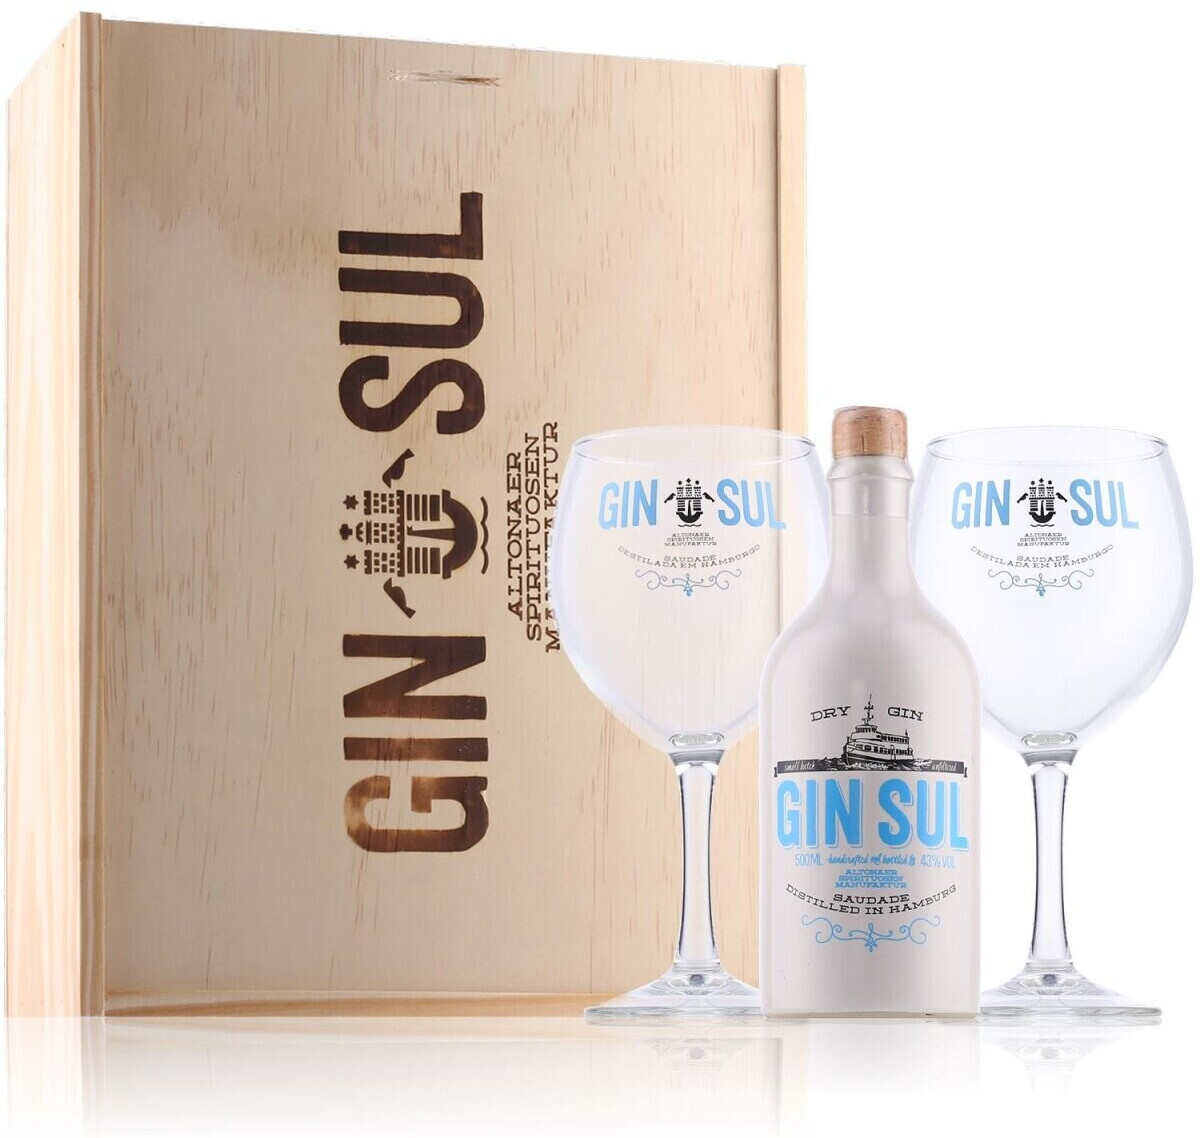 Gin Sul Dry Gin 43% 0,5l Geschenkbox aus Holz mit Gäsern ab 54,49 € |  Preisvergleich bei